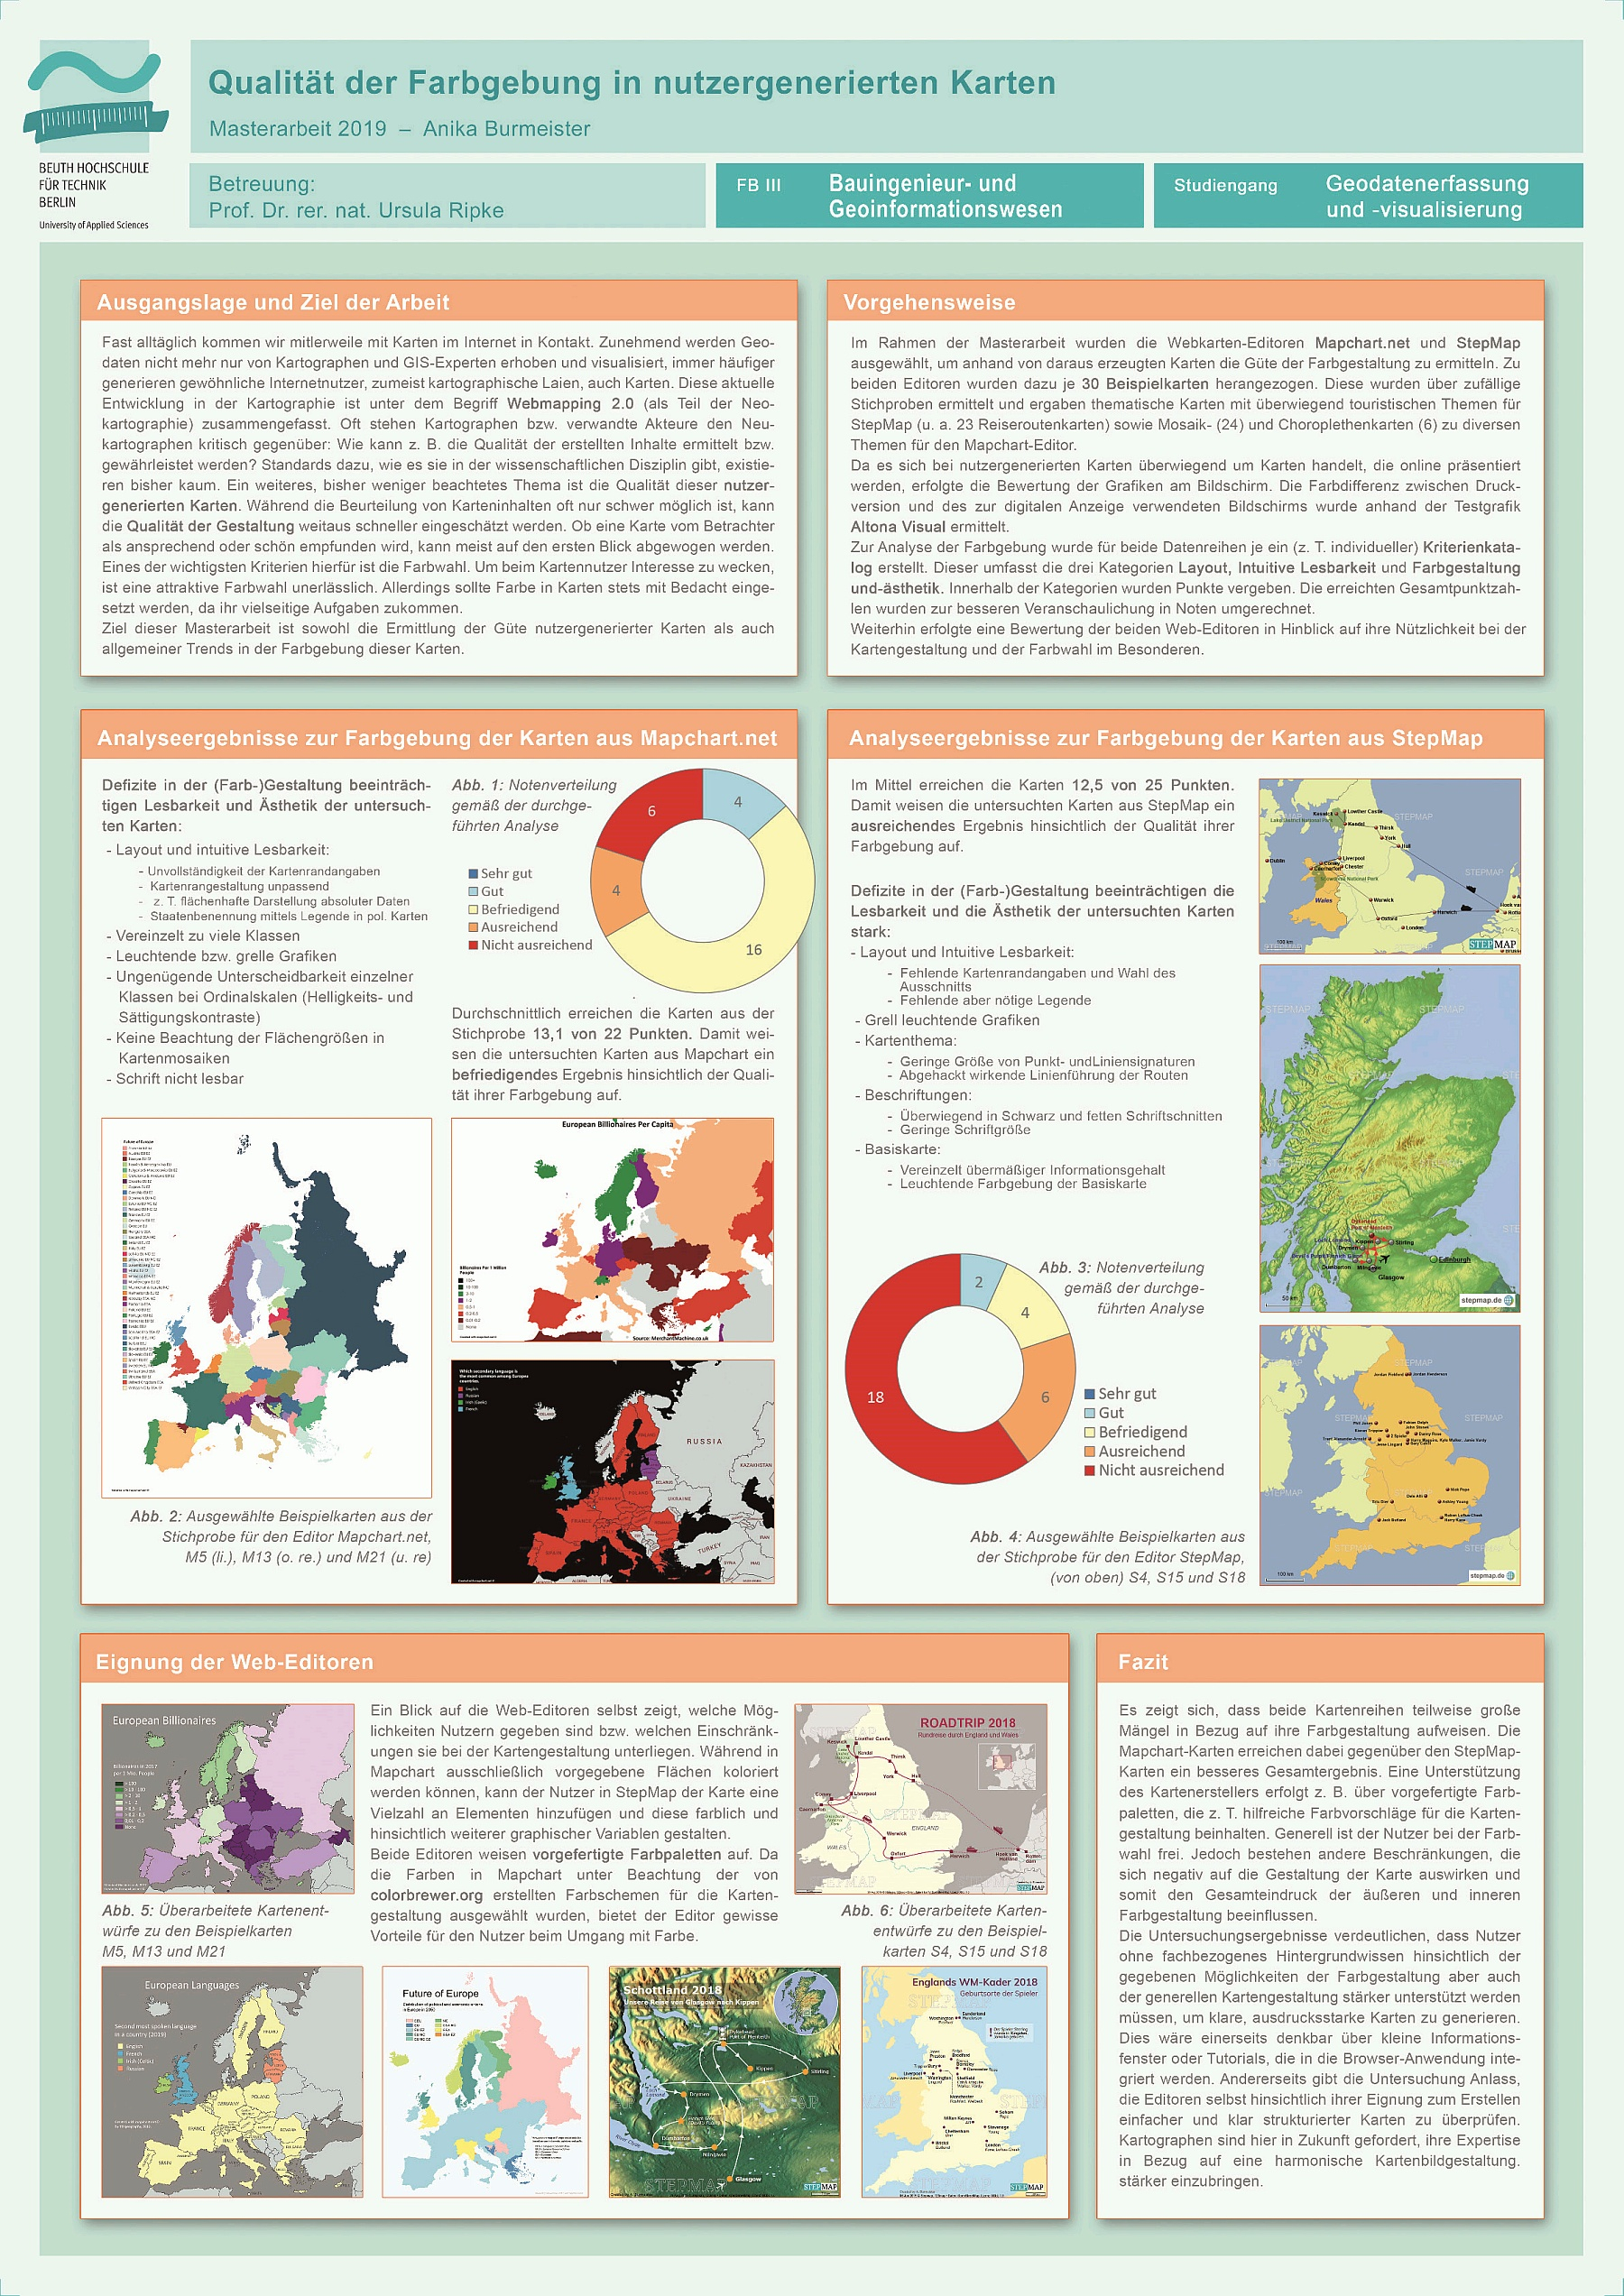 Poster: Farbgebung nutzergenerierter Karten – Eine Untersuchung zur Qualität der Farbanwendung im Bereich Webmapping 2.0 am Beispiel von zwei ausgewählten Web-Editoren